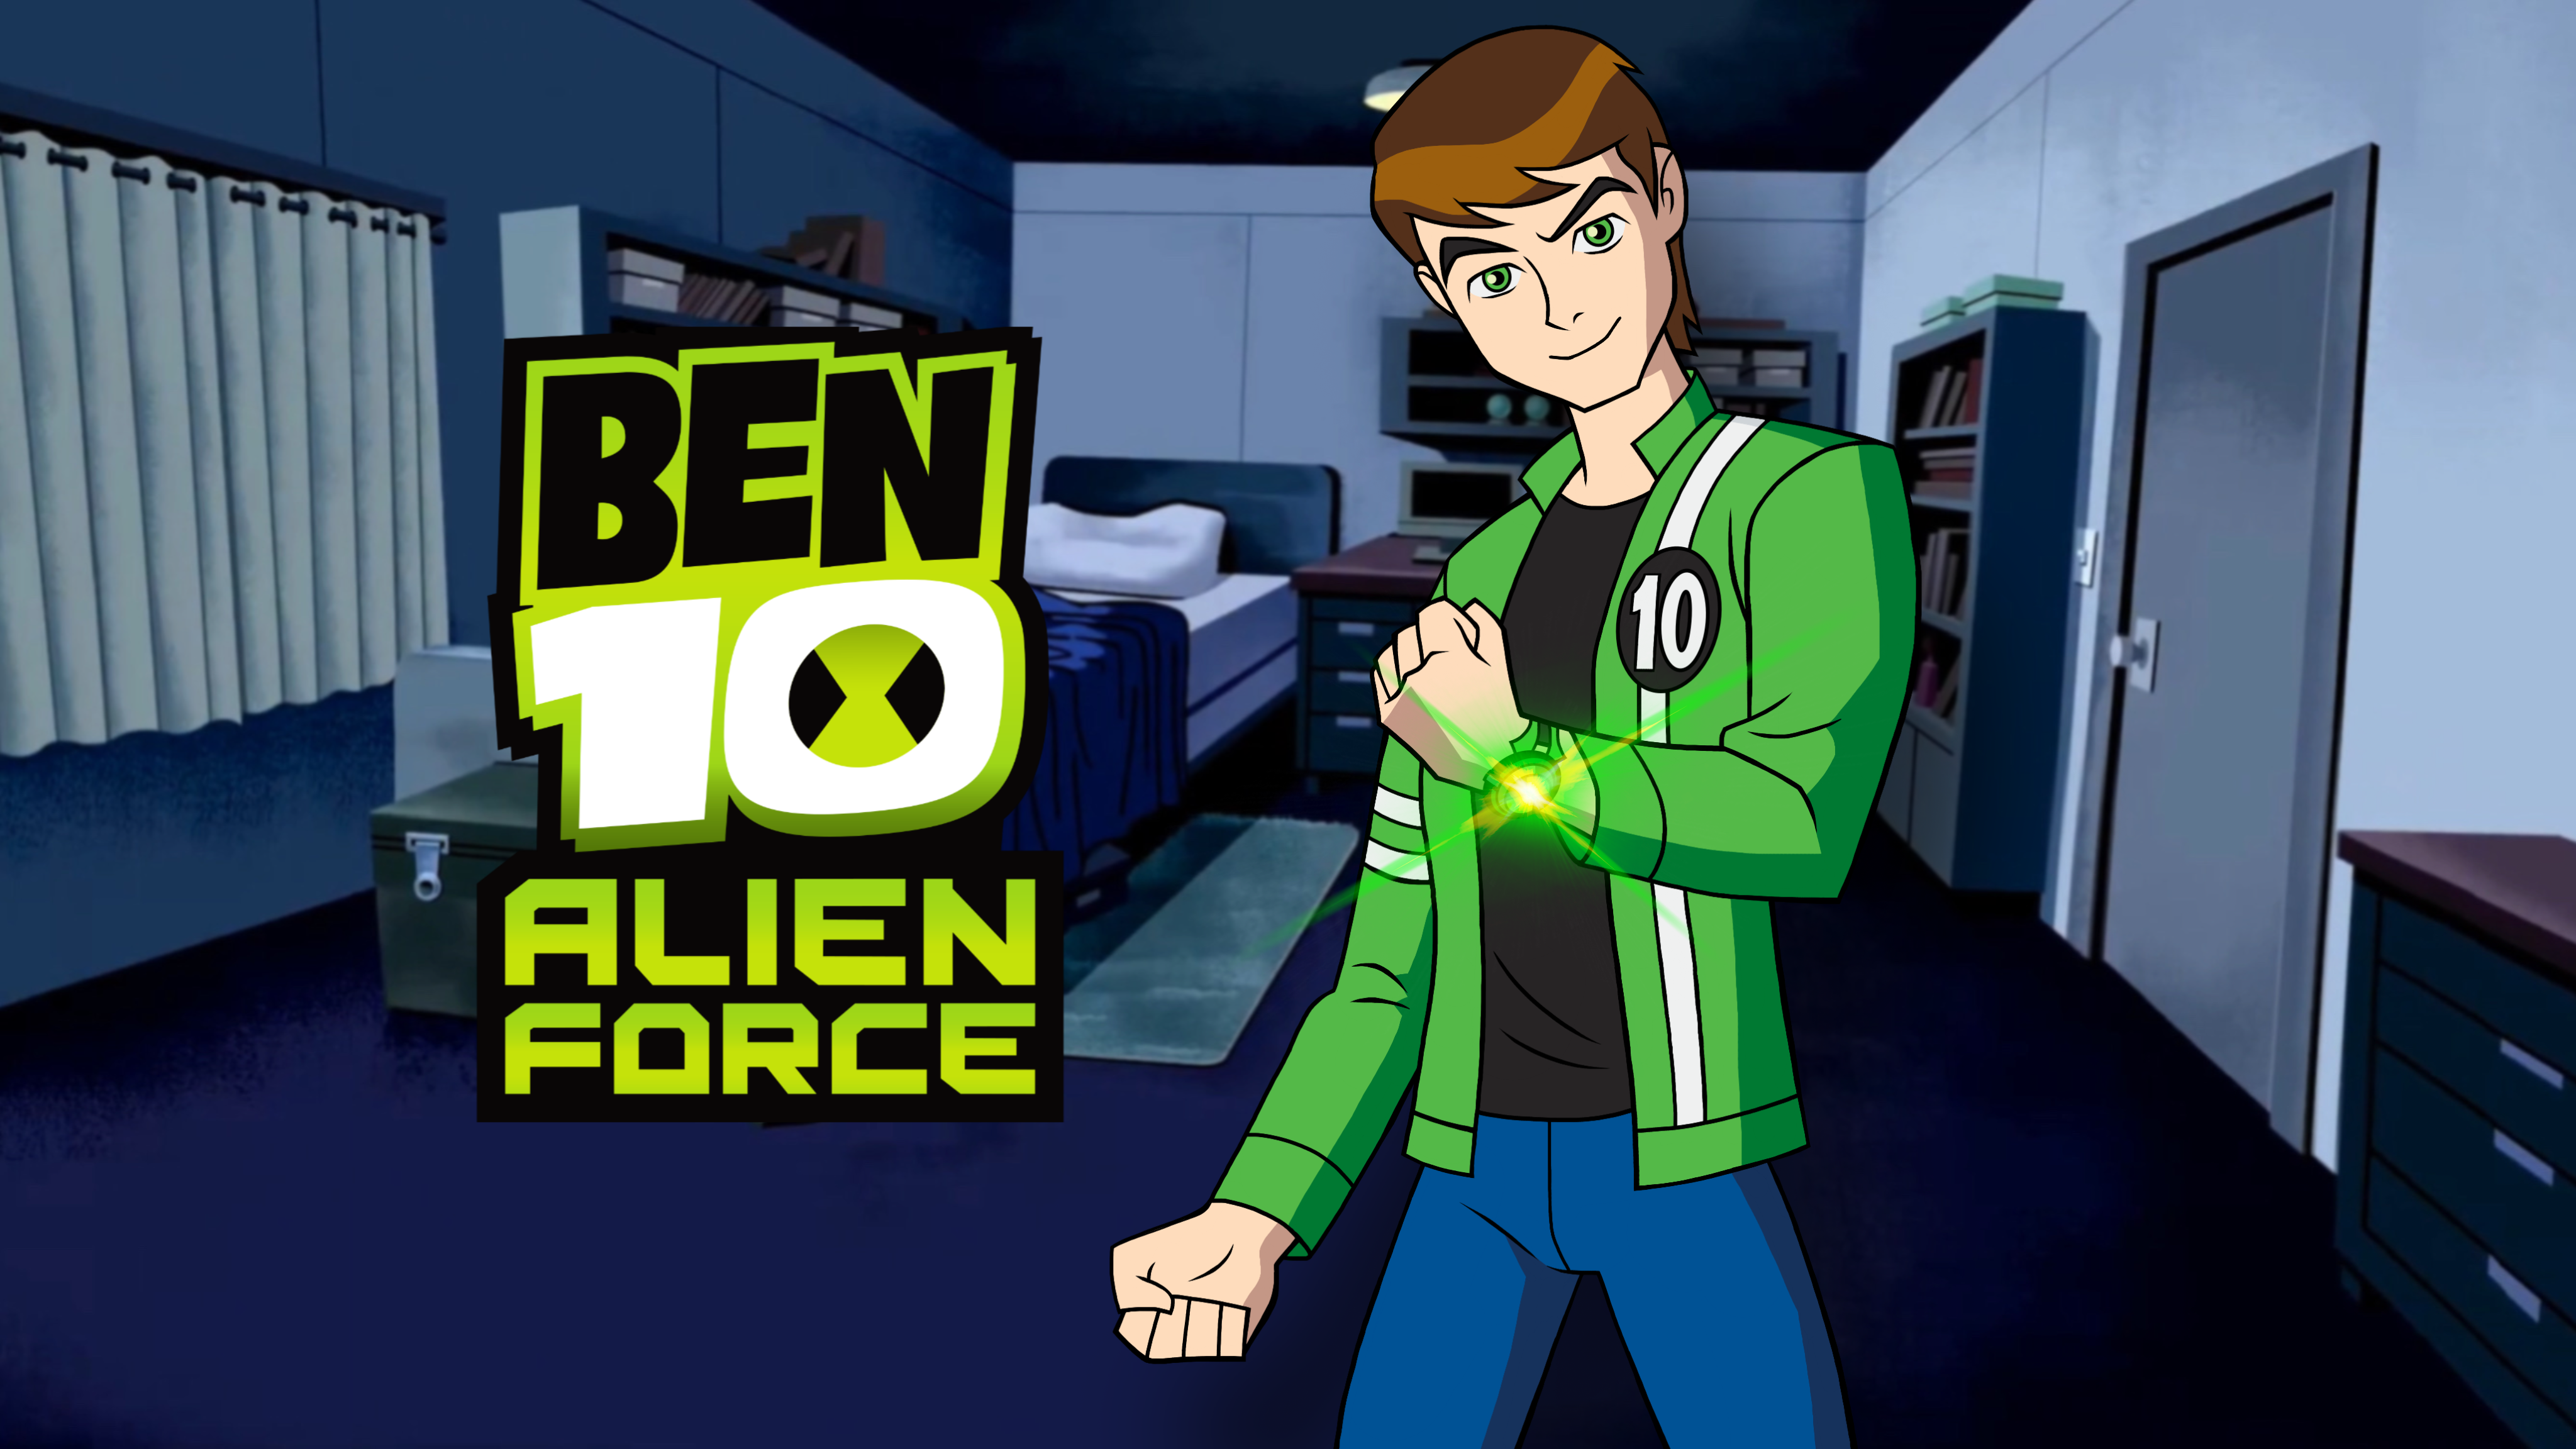 Ben 10 Alien Force Poster by TheHawkDown on DeviantArt